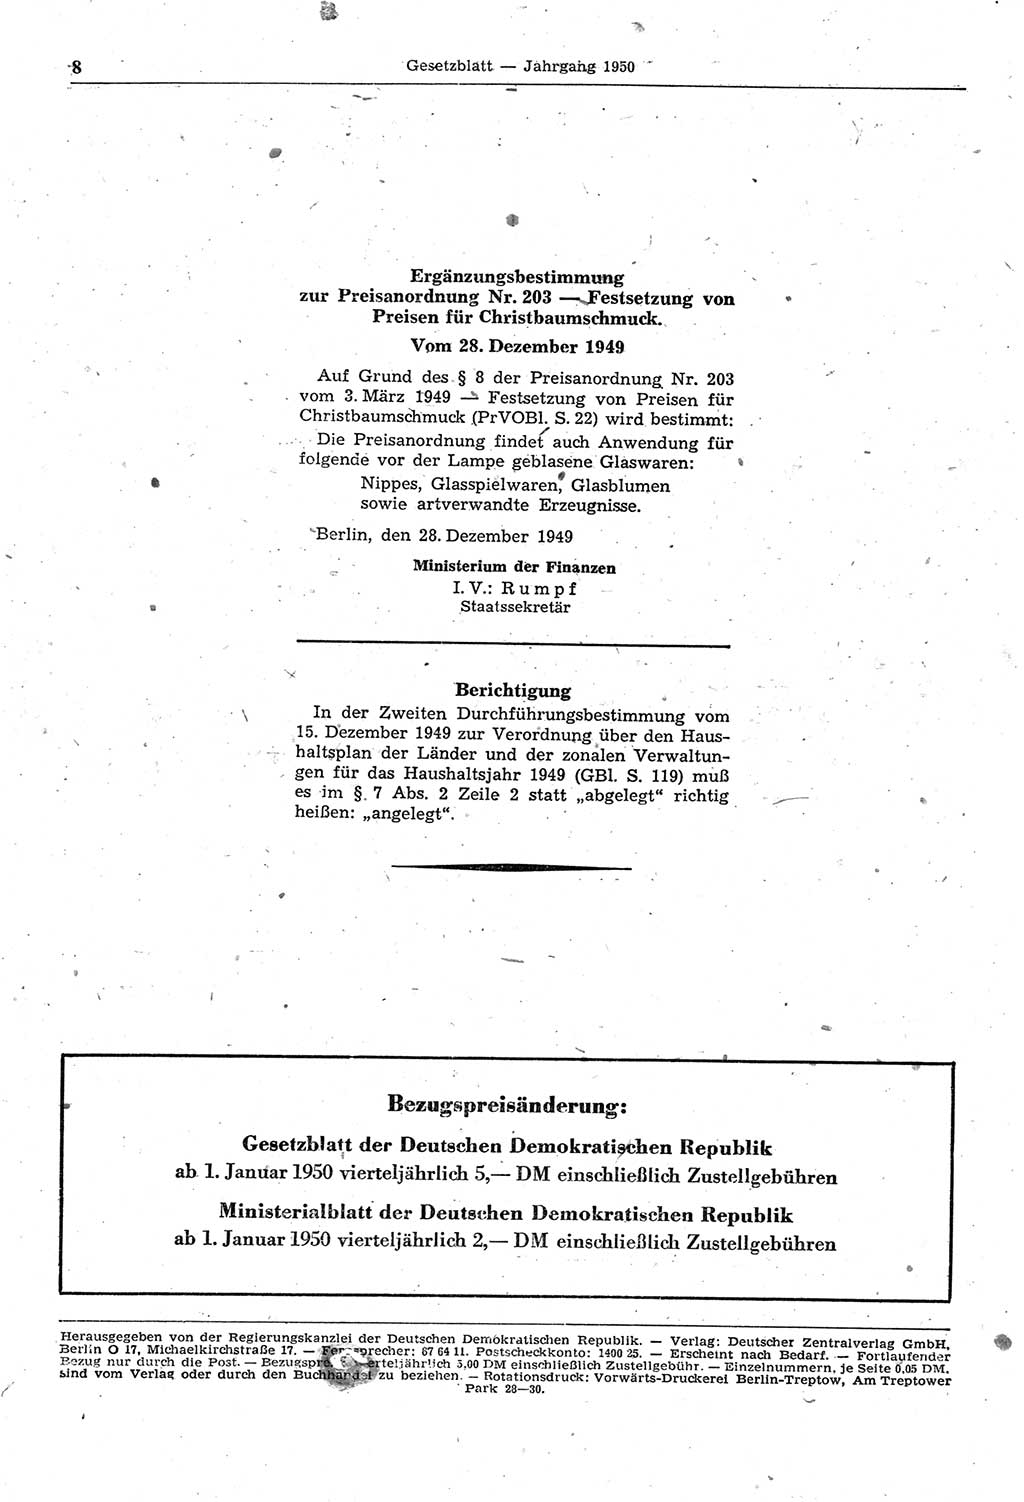 Gesetzblatt (GBl.) der Deutschen Demokratischen Republik (DDR) 1950, Seite 8 (GBl. DDR 1950, S. 8)